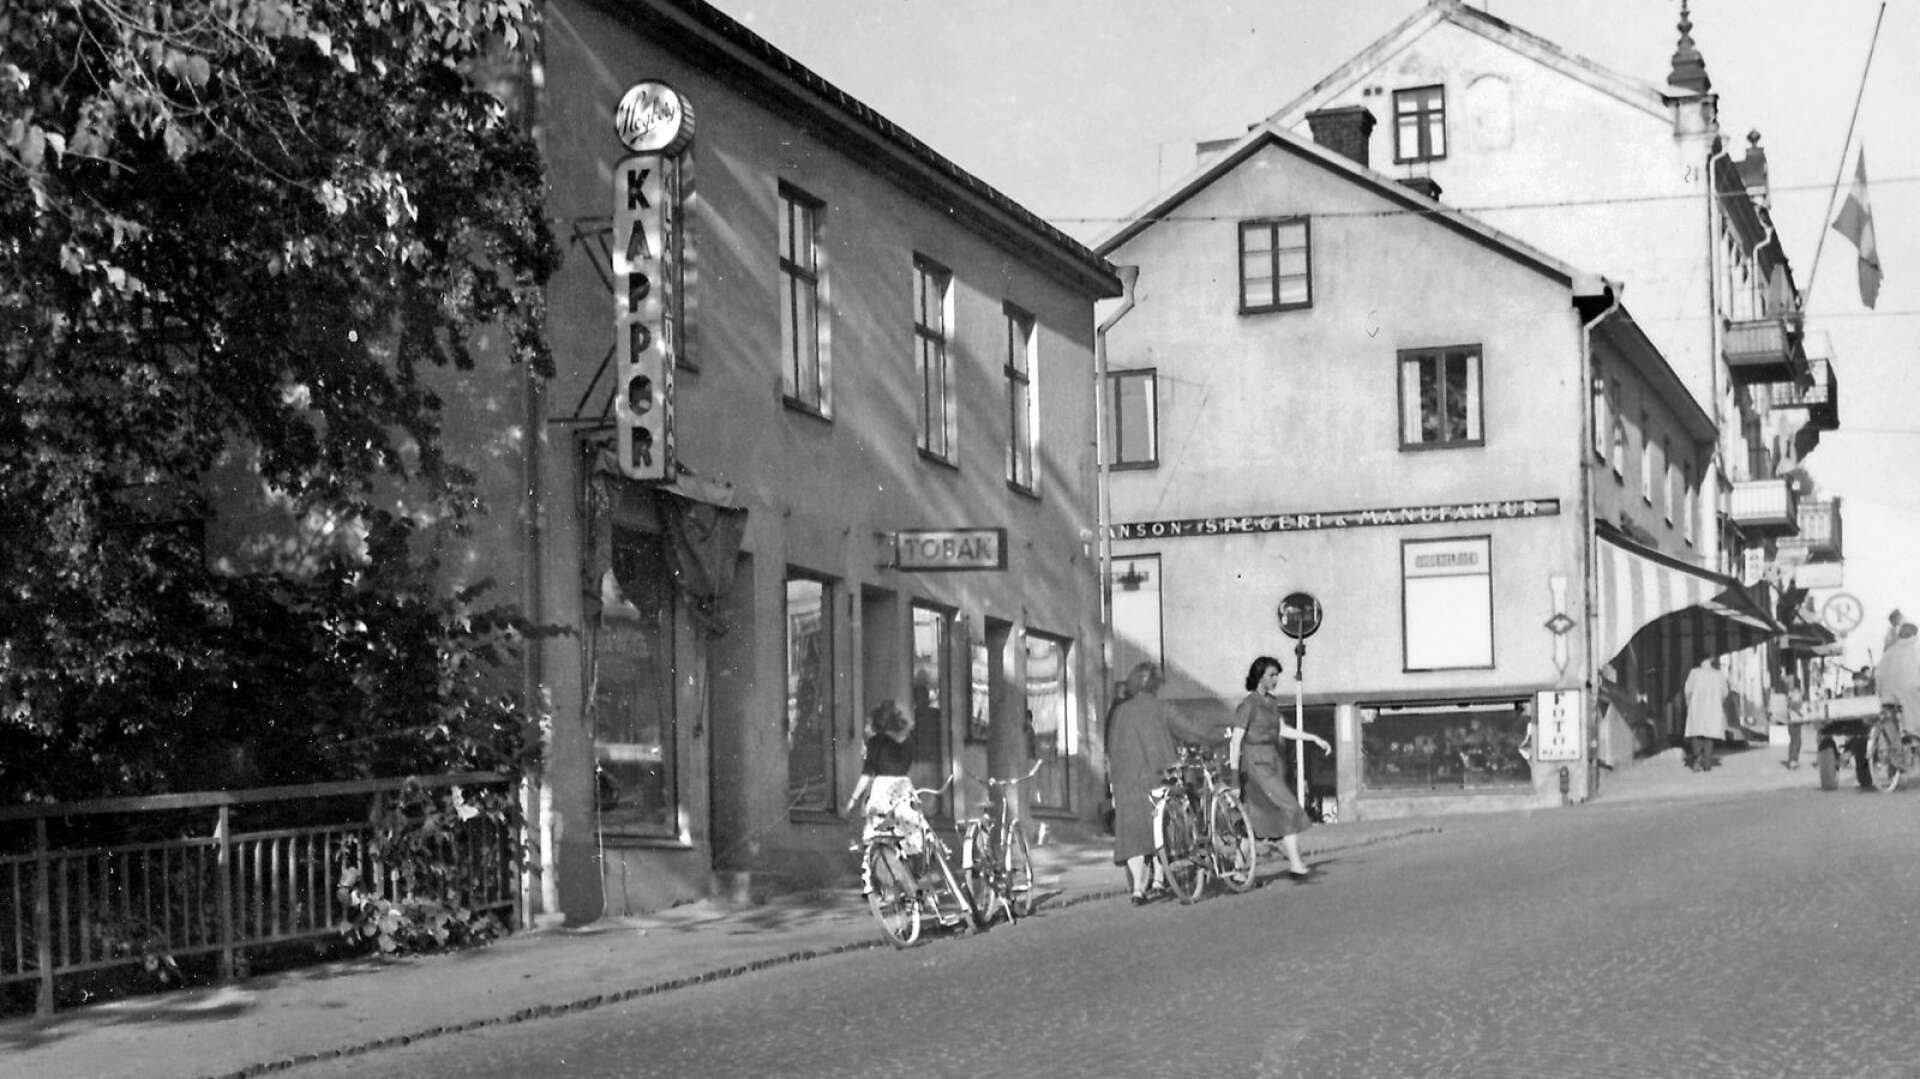 Vid Kvarnbacken låg ännu på 1950-talet det så kallade Reutershuset med Höglunds Kappor, Berggrens Tobaksaffär och guldsmed Albrektsson. Längst ned i huset ovanför låg Fotomagasinet, som senare blev en av de första som flyttade in i nybygget som växte upp i stället för Reutershuset. 